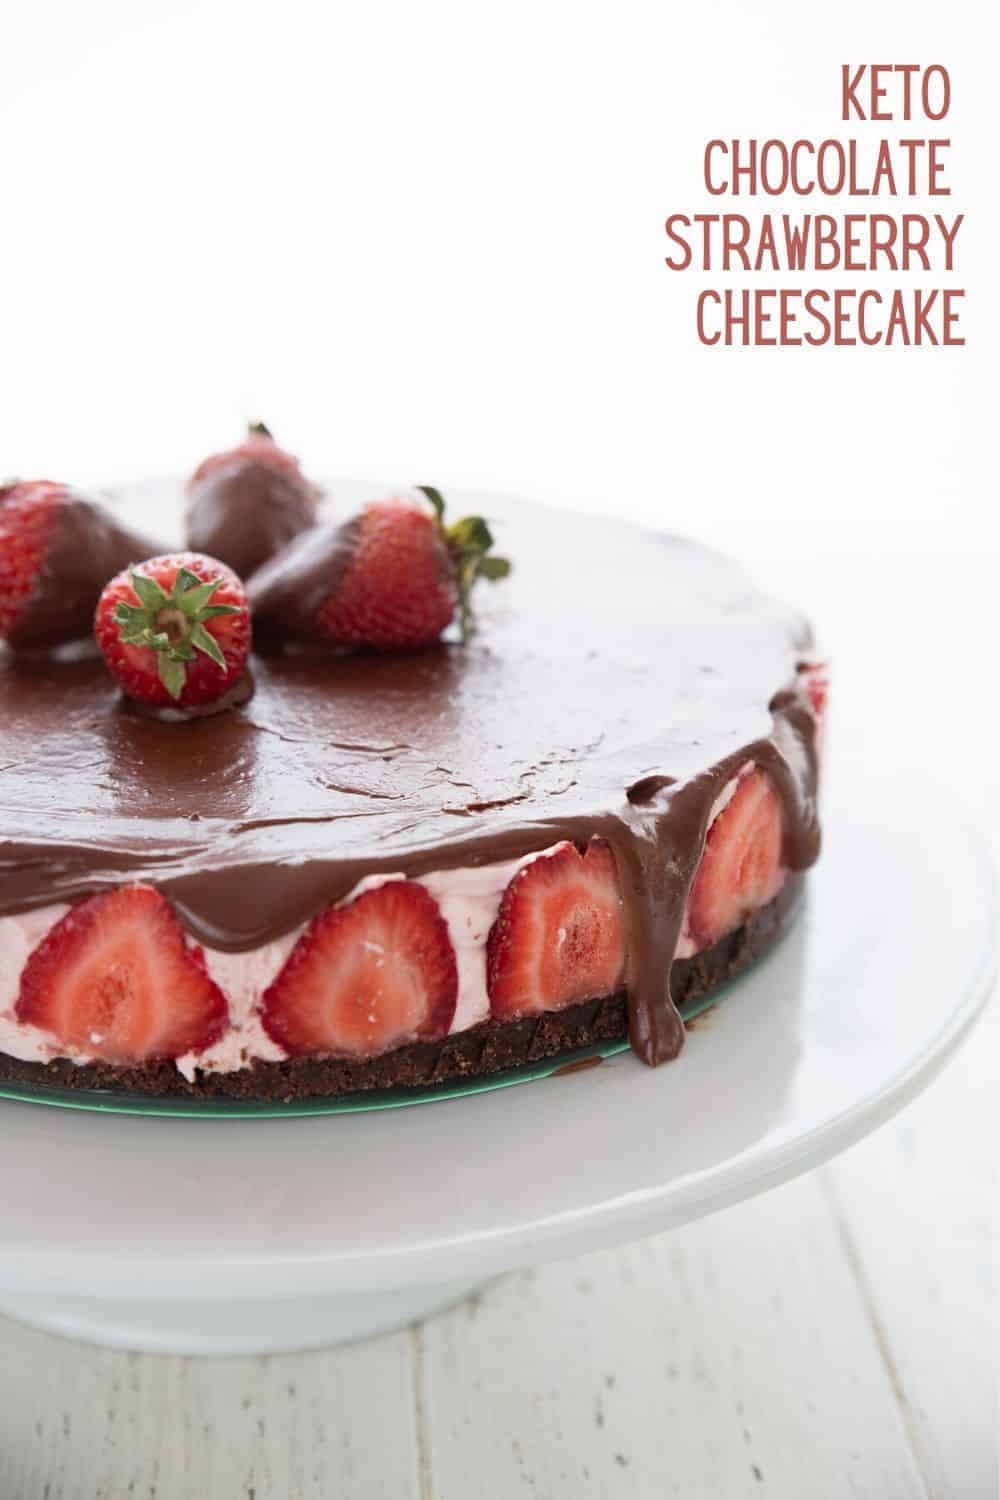 Keto Chocolate Strawberry Cheesecake